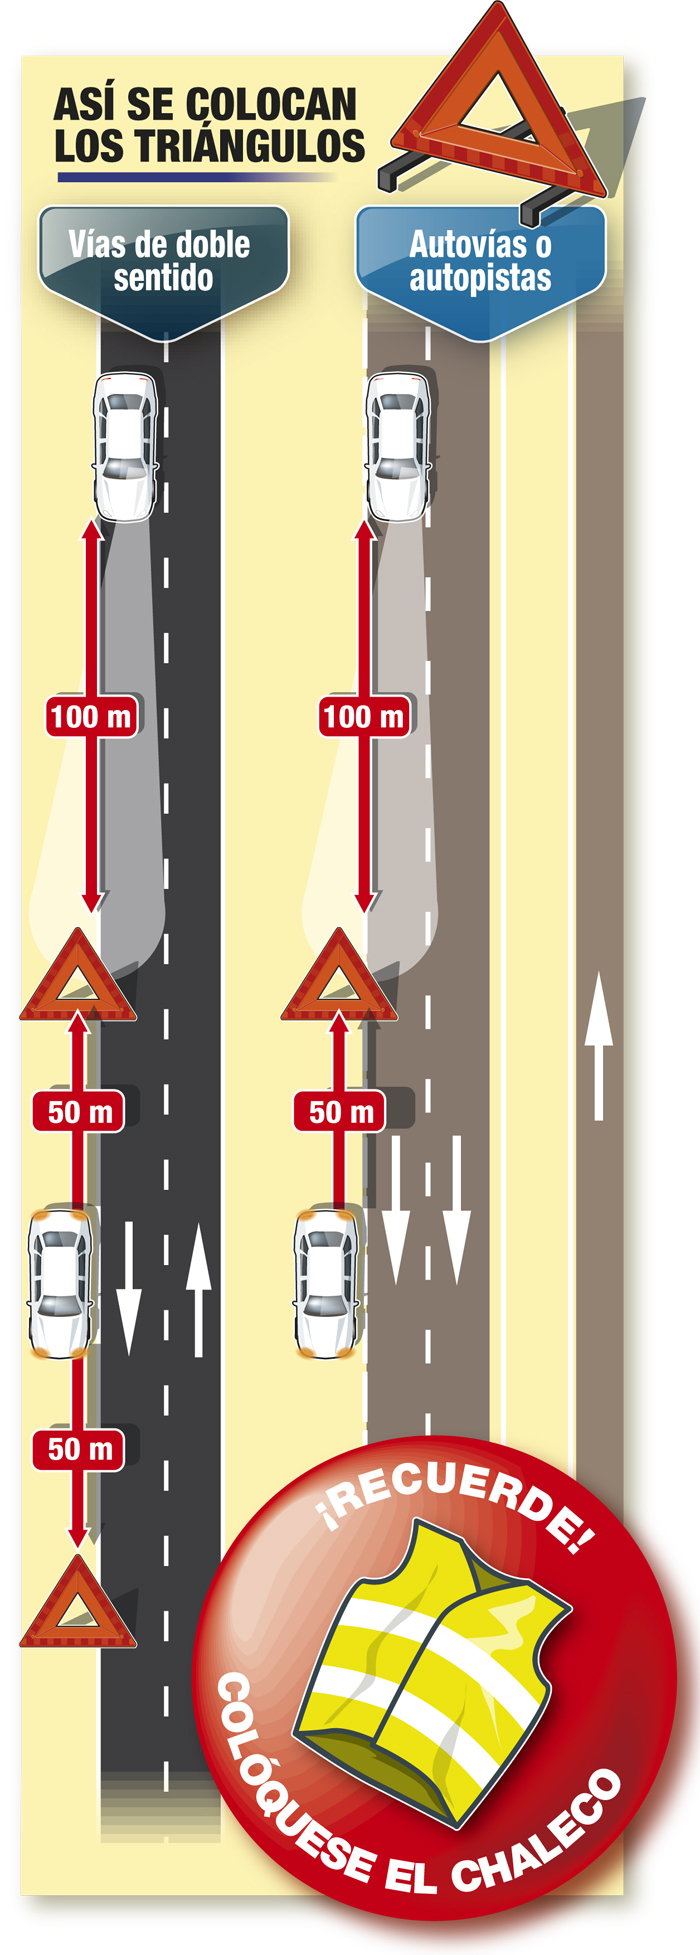 Infografía que explica cómo deben colocarse los triángulos en carreteras de doble sentido y en autovías o autopistas